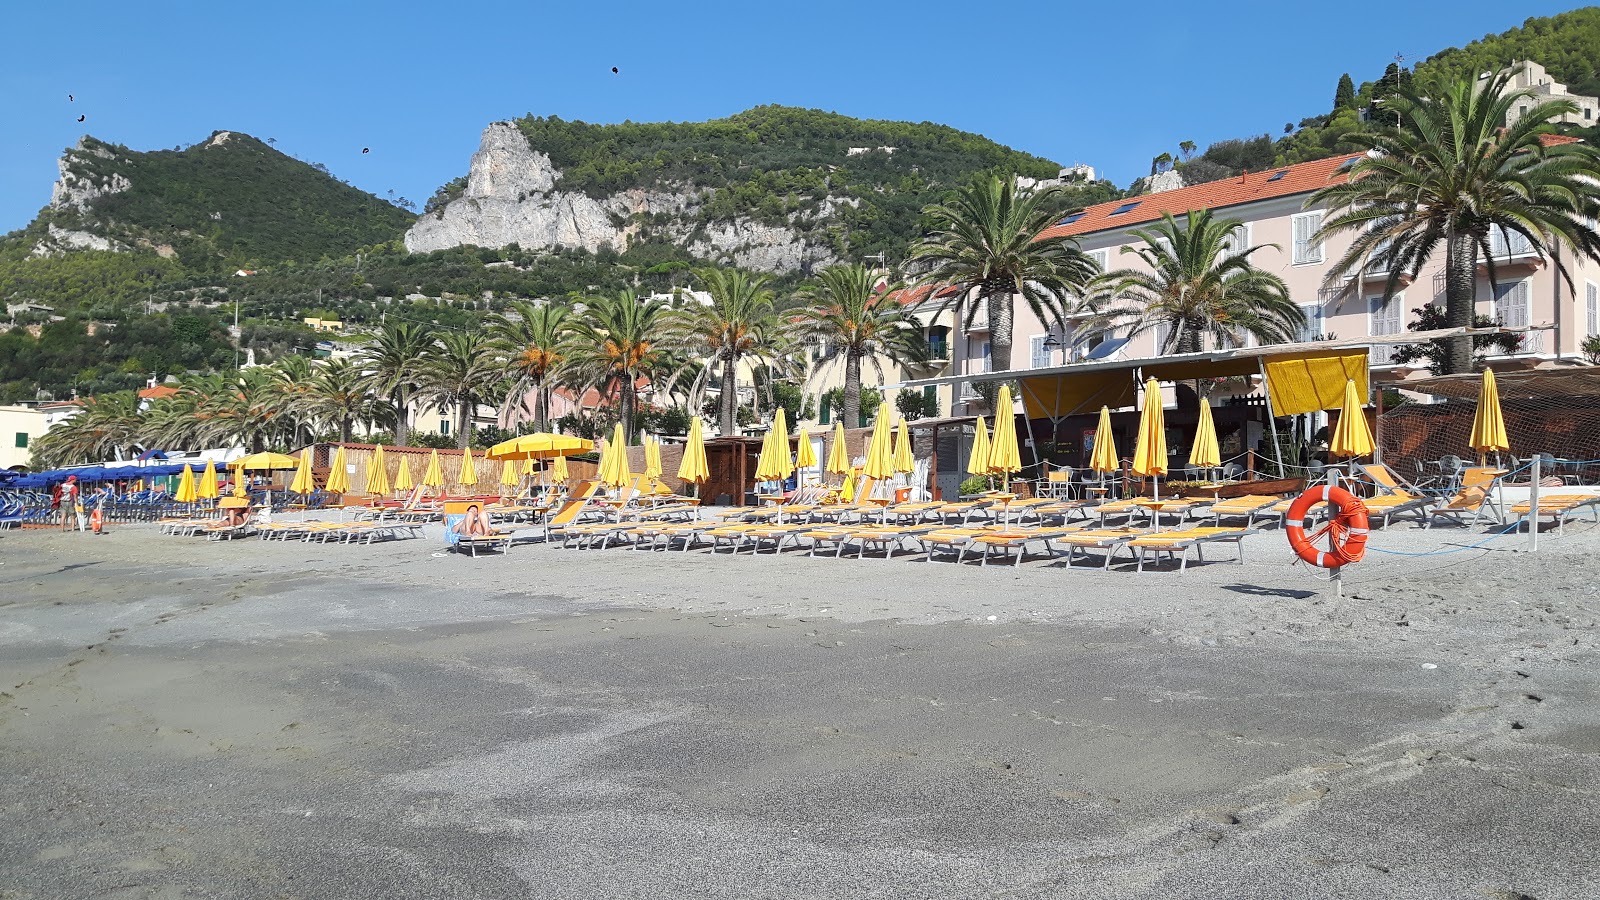 Foto von Spiaggia libera di Varigotti - beliebter Ort unter Entspannungskennern